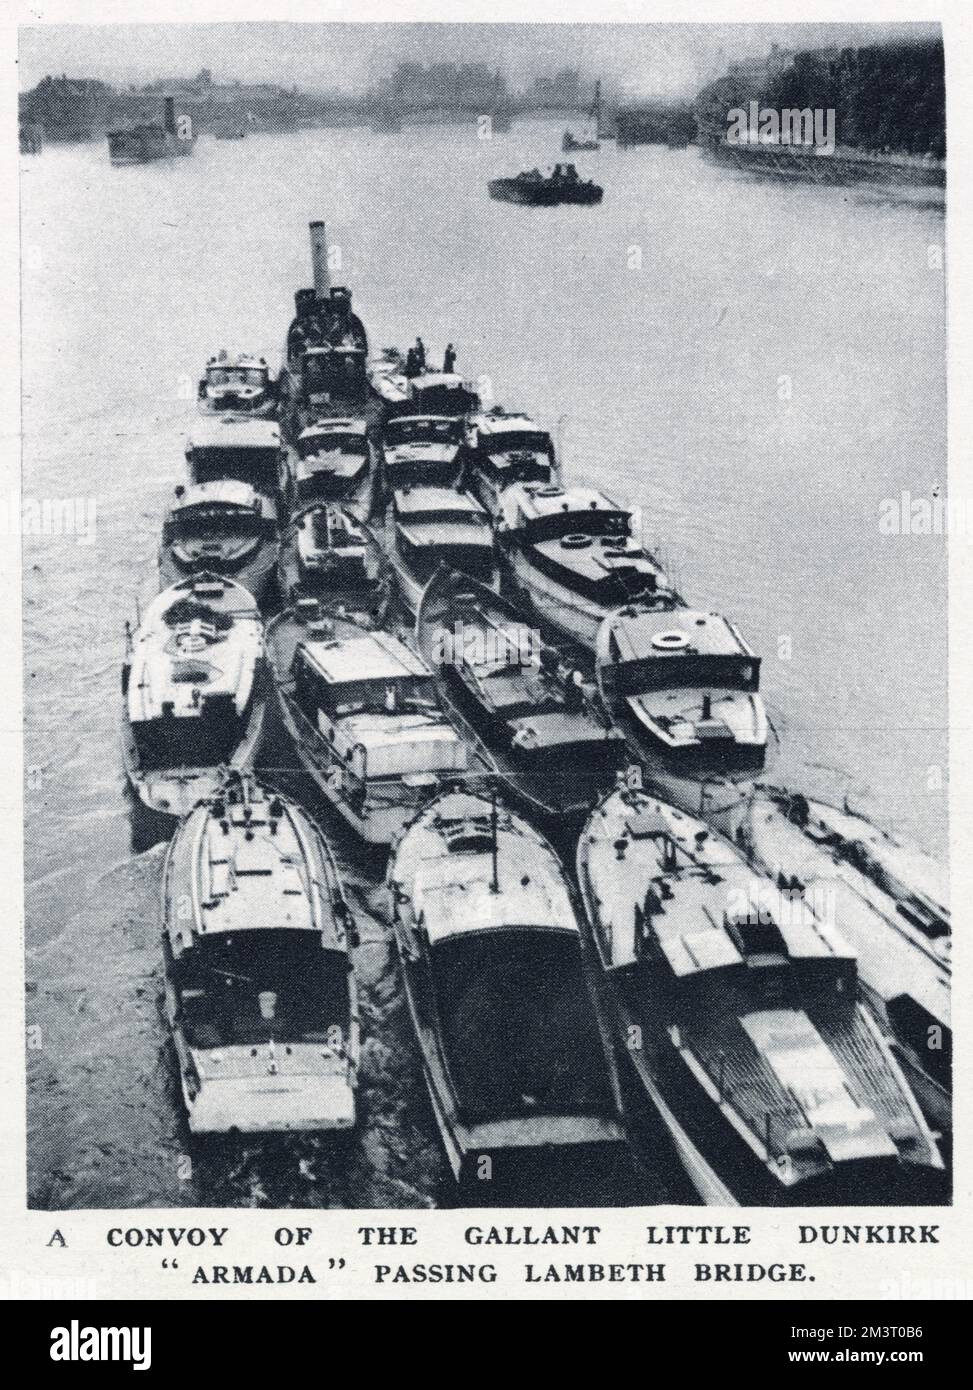 Ein Konvoi kleiner Boote, die bei der Evakuierung von Dünkirchen verwendet wurden, hier am 9. Juni gesehen, vorbei an der Lambeth Bridge, auf der Themse in London. Datum: 1940 Stockfoto